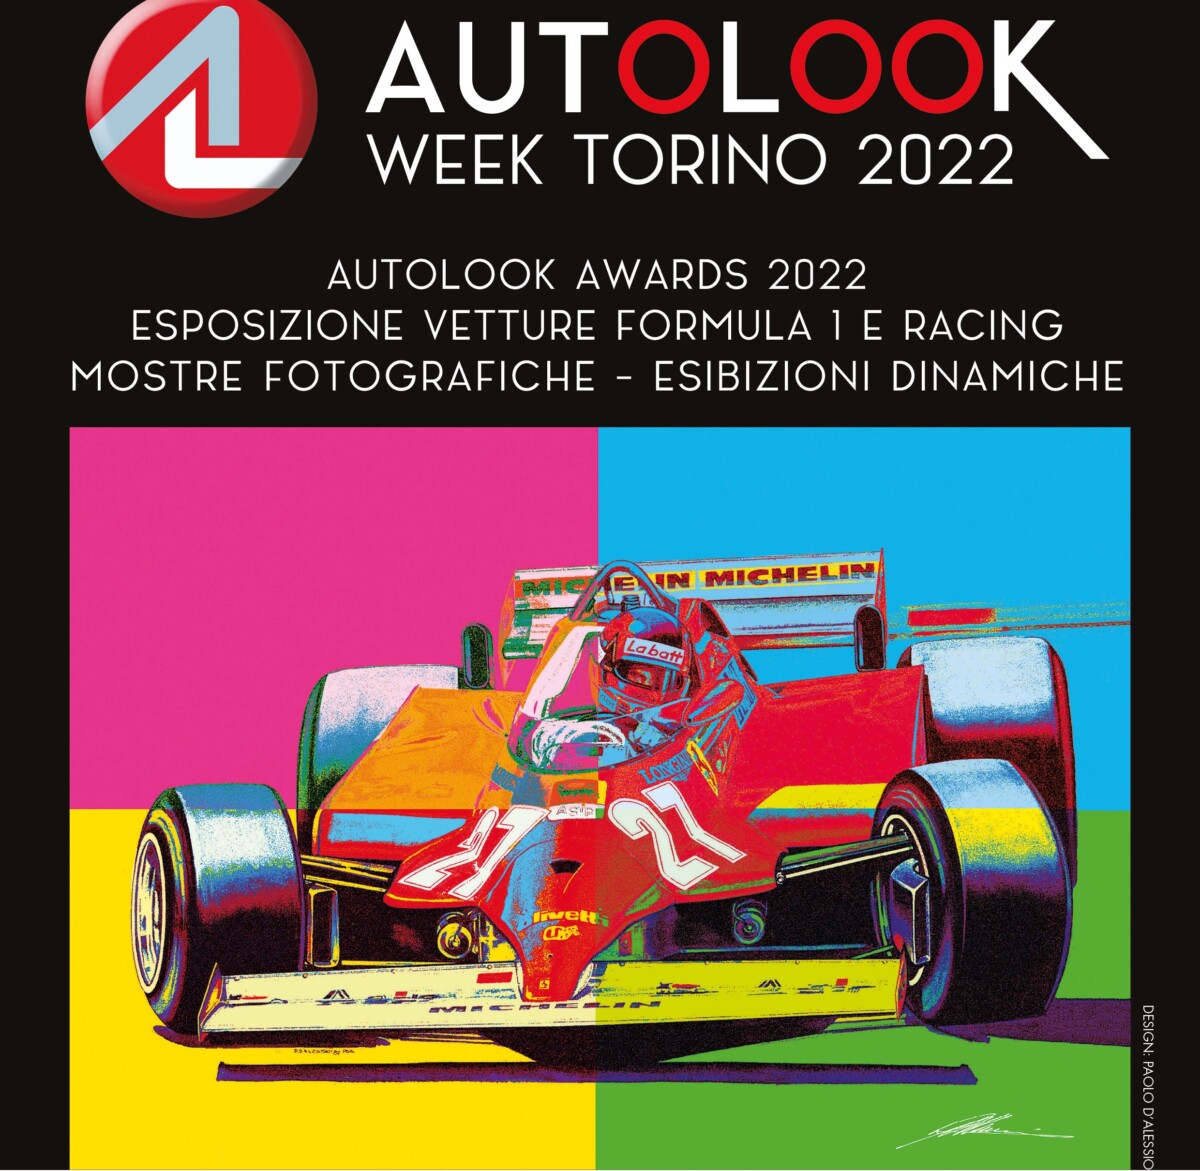 Autolook Week Torino: i dettagli e gli Awards del festival del motorsport